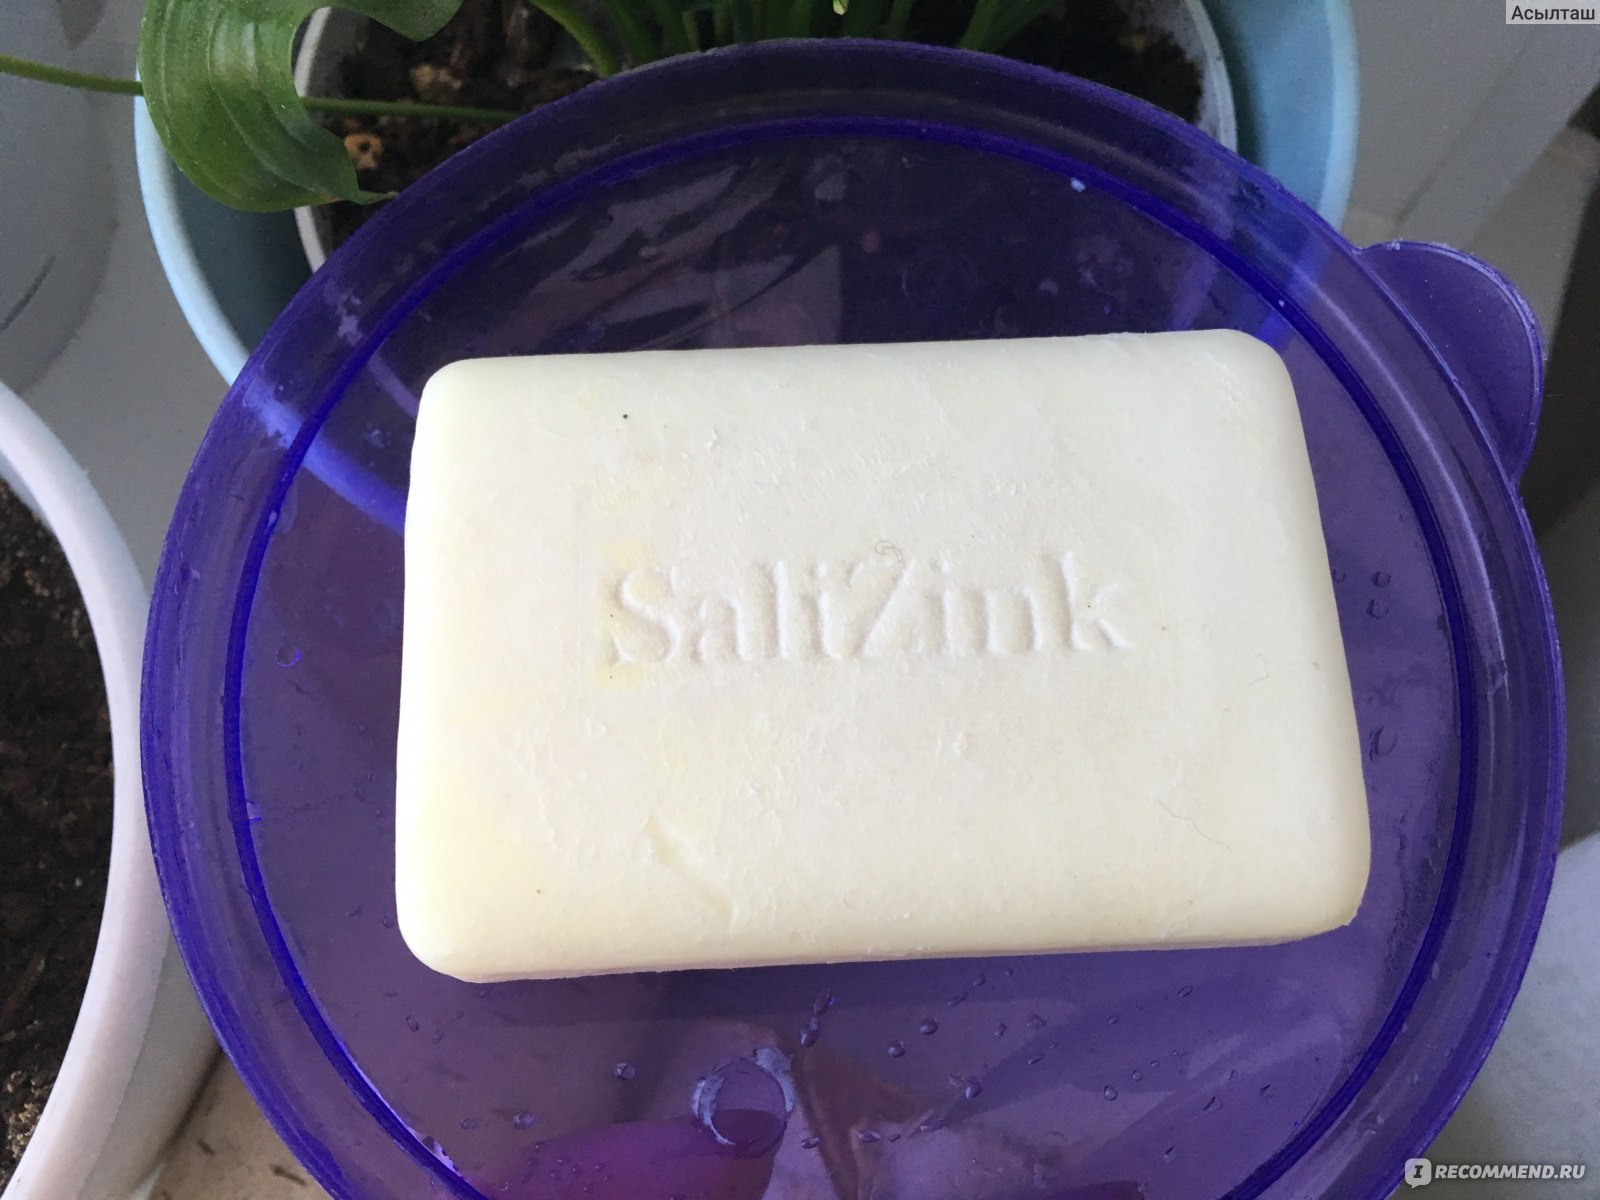 Мыло Salizink с серой